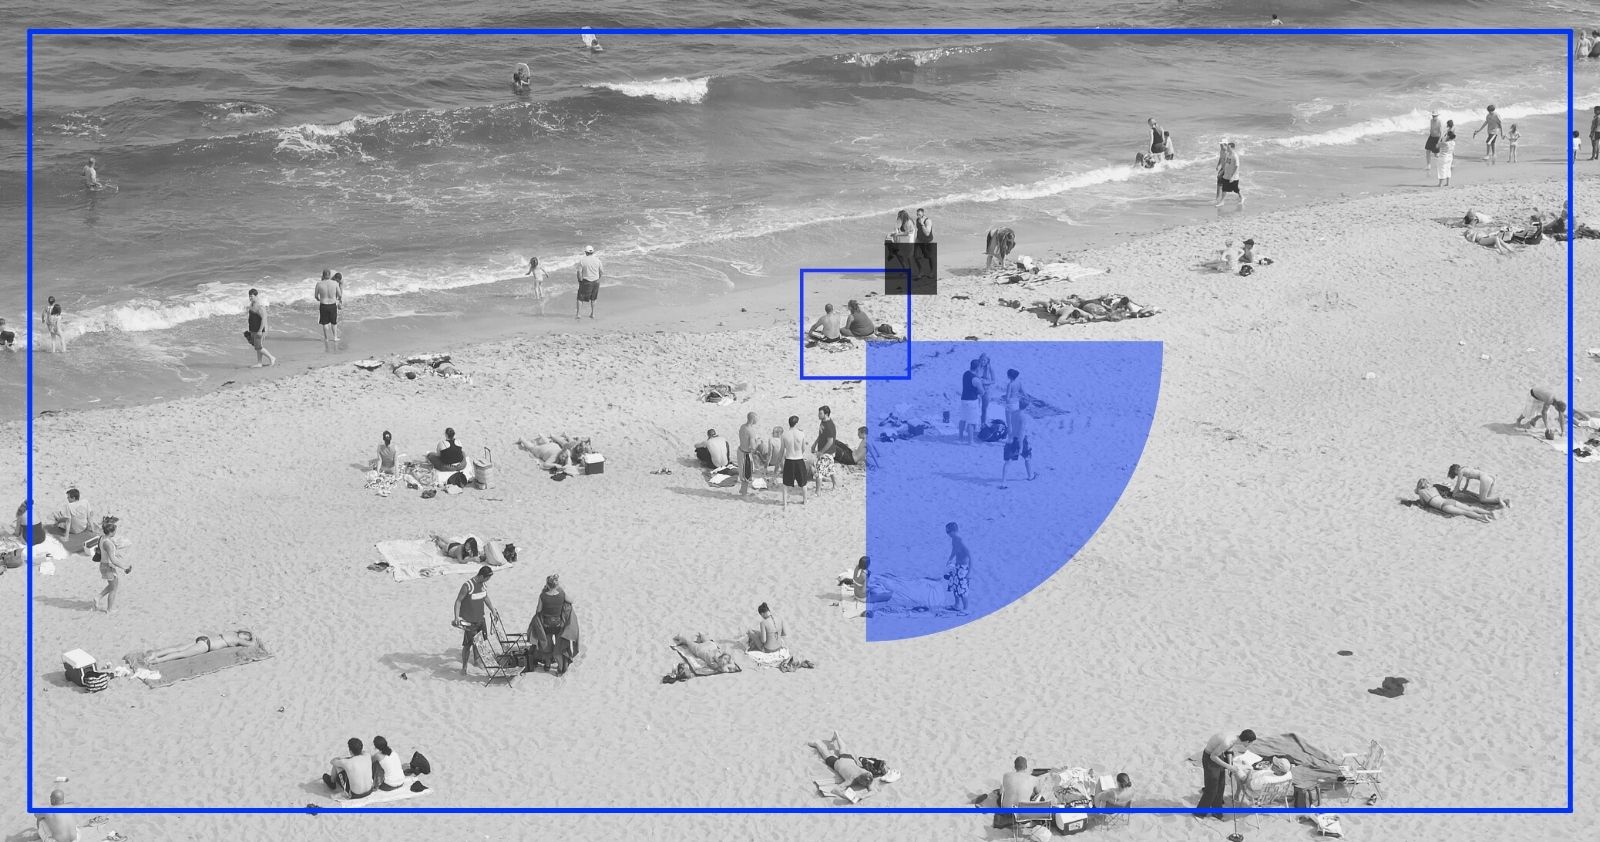 Control de aforo en playas mediante inteligencia artificial (AI)